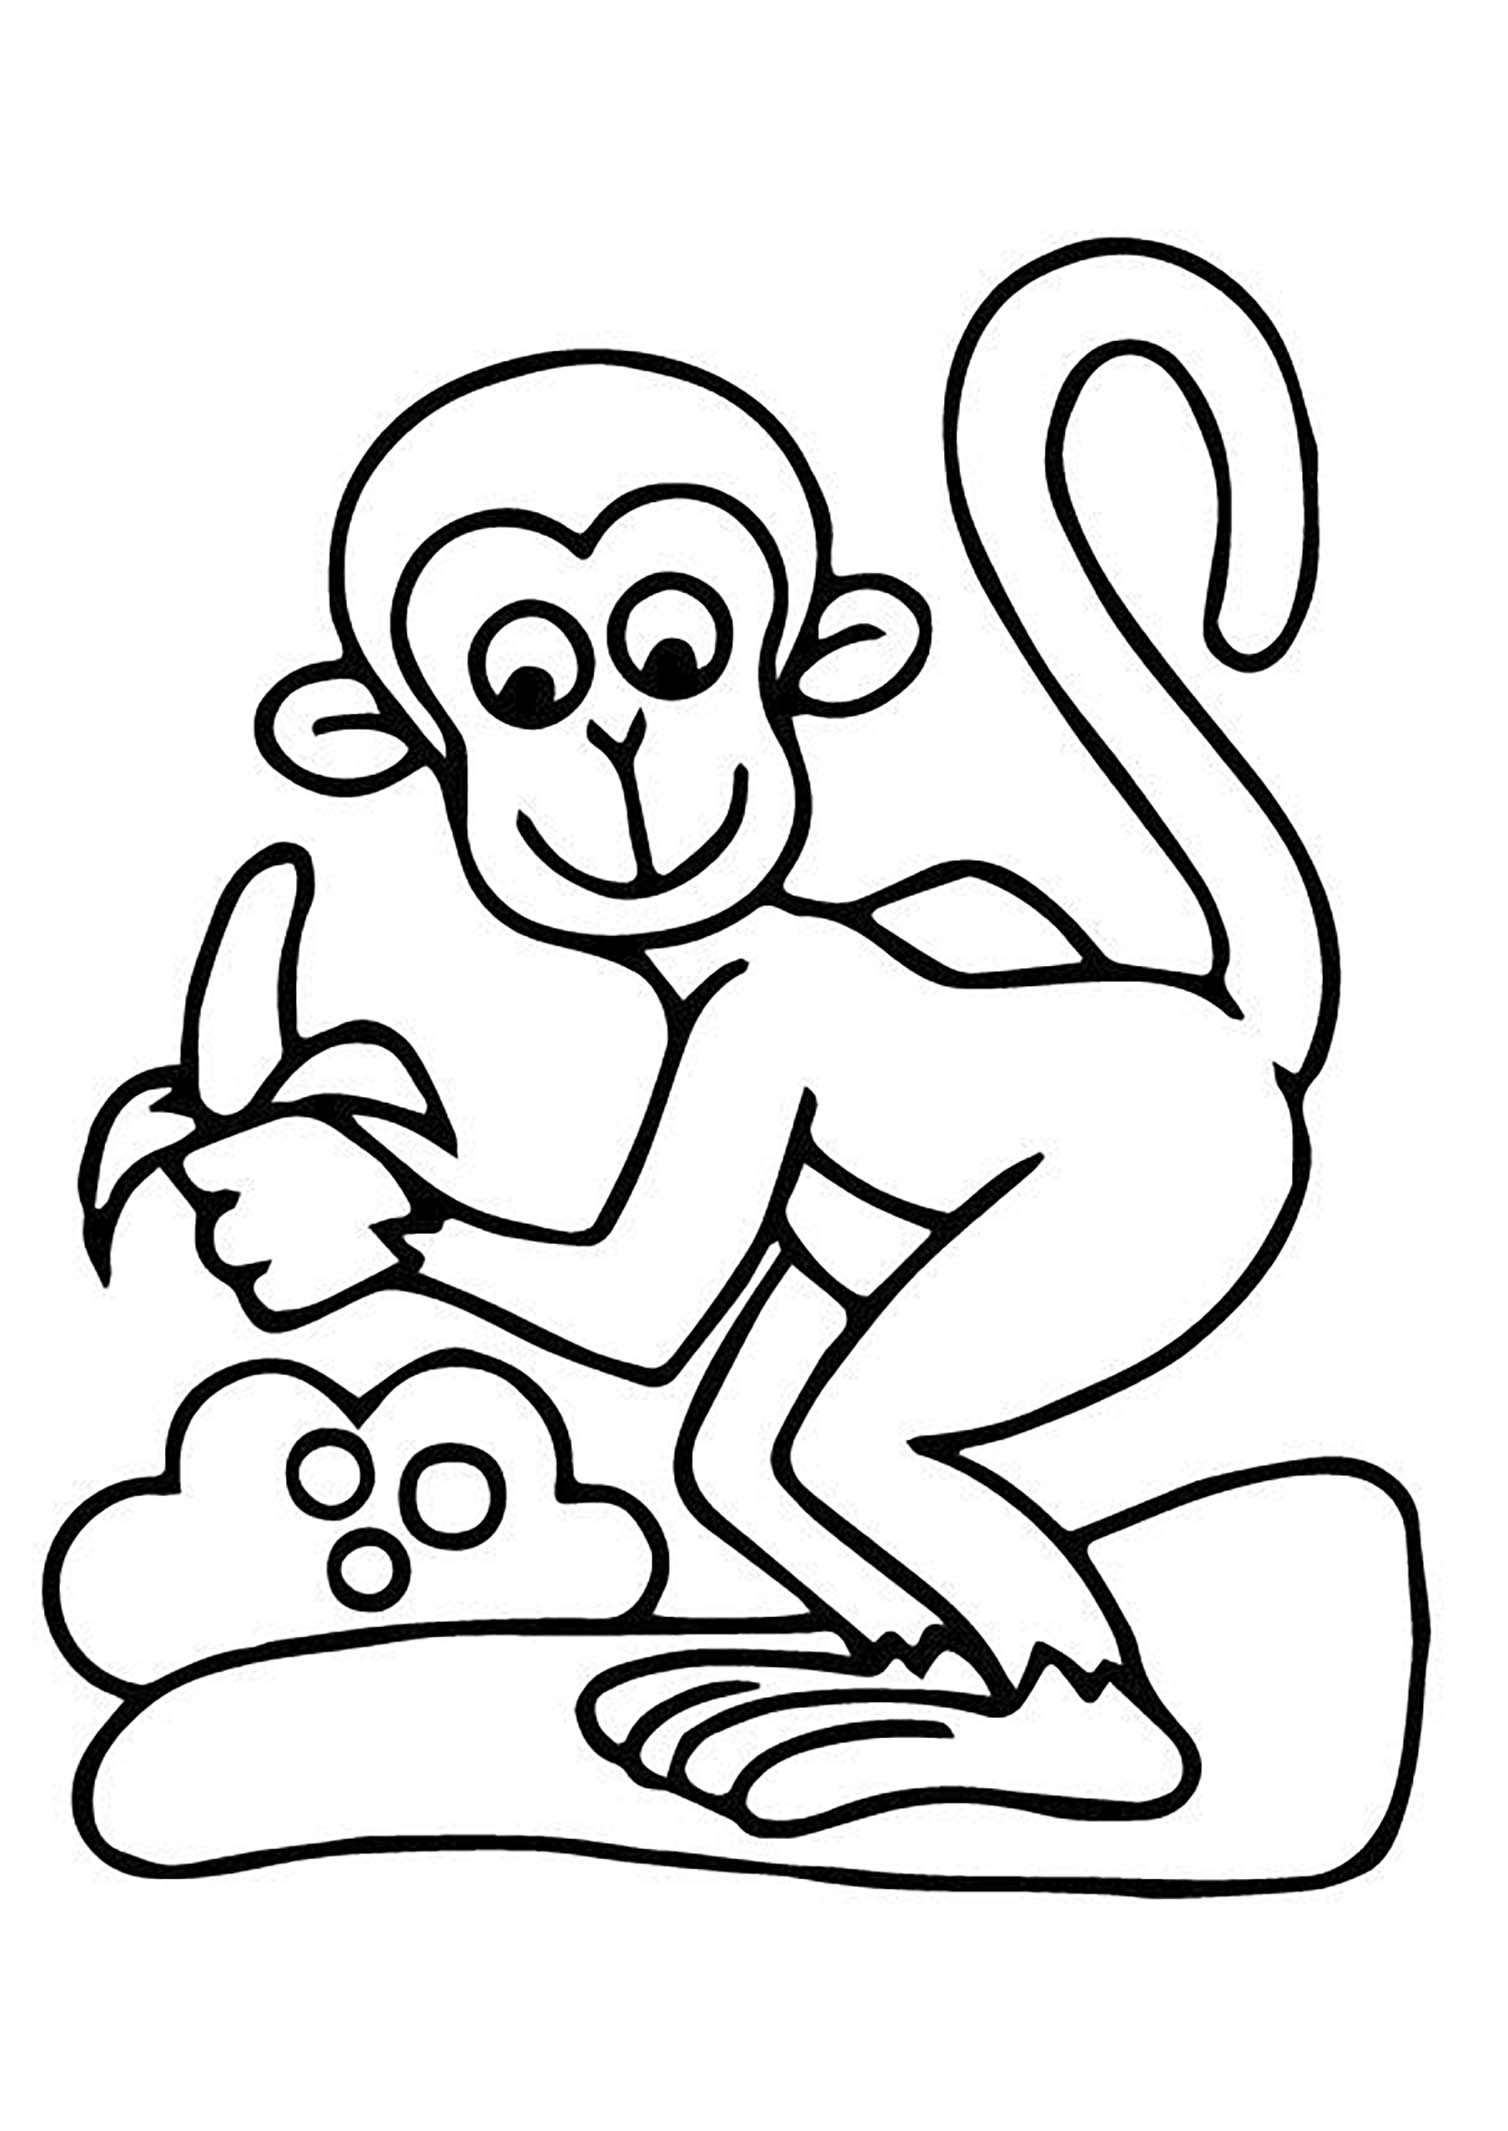 Dibujo de mono para colorear, fácil para los niños